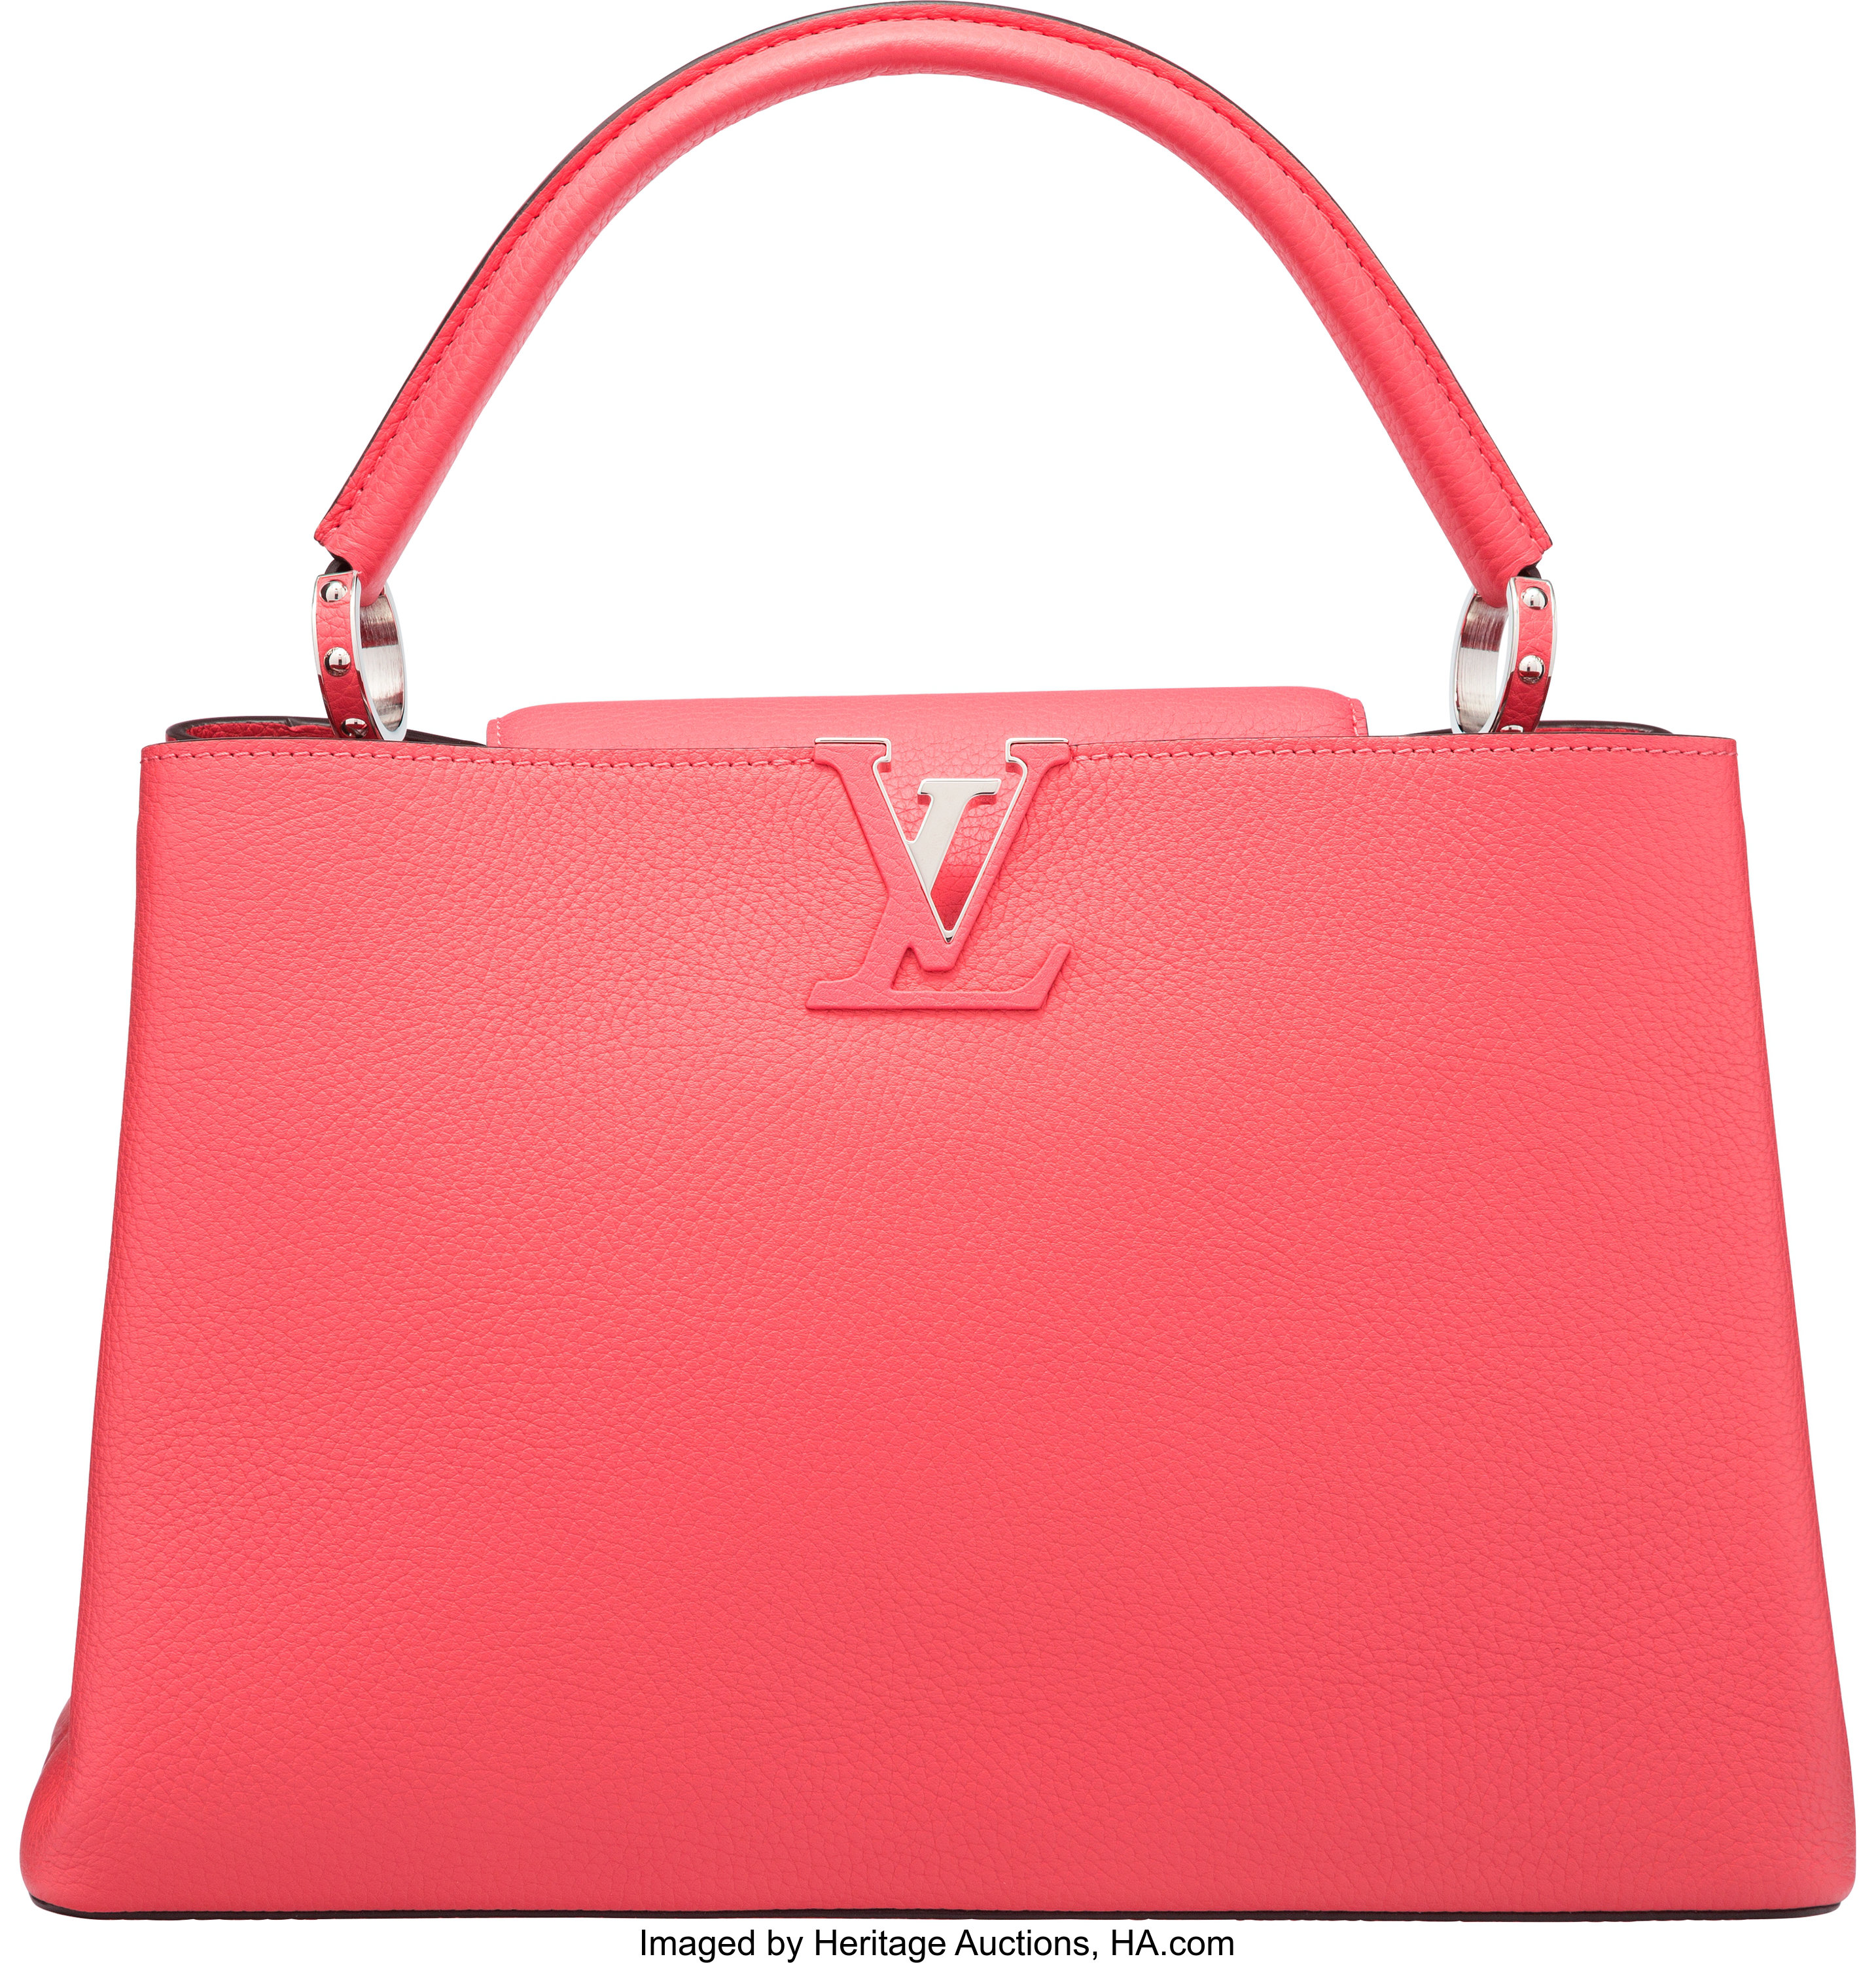 Louis Vuitton. Capucines Limited Edition Bag. Auction